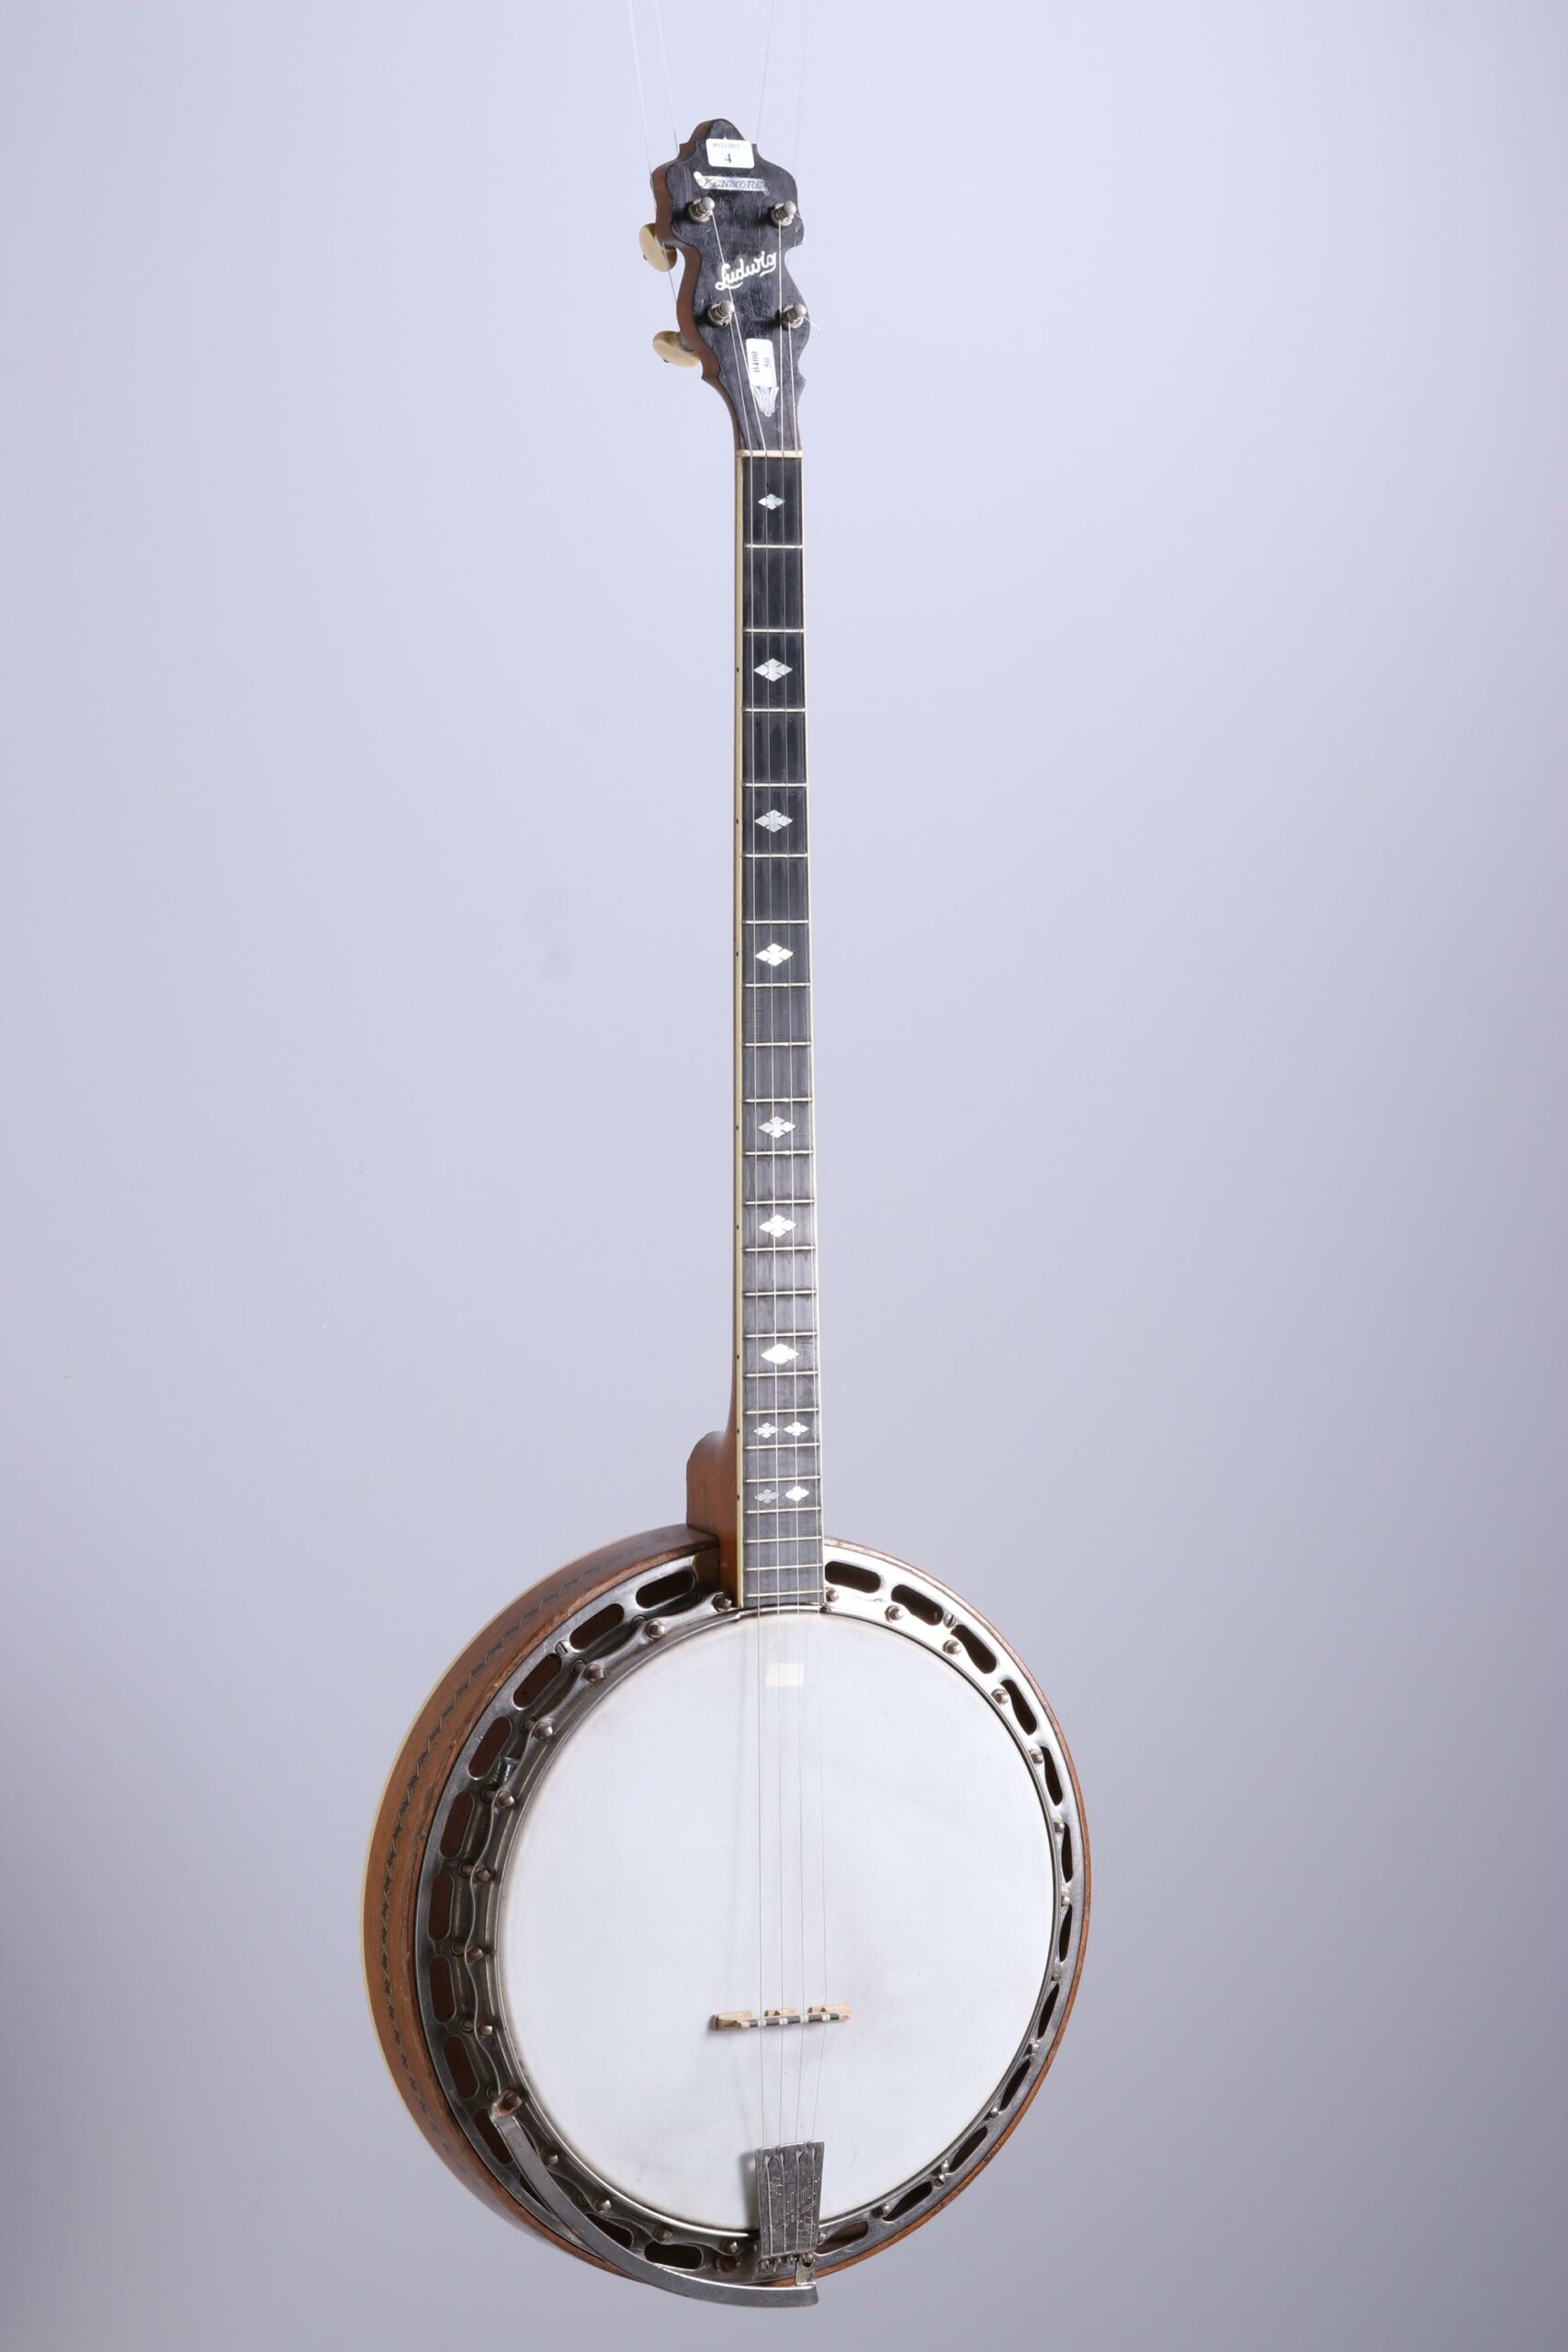 Banjo ténor Plectrom de marque LUDWIG, modèle Kenmor Collection Palm Guitars Instrument mis en vente par Vichy Enchères le 5 novembre 2022 © Vichy Enchères